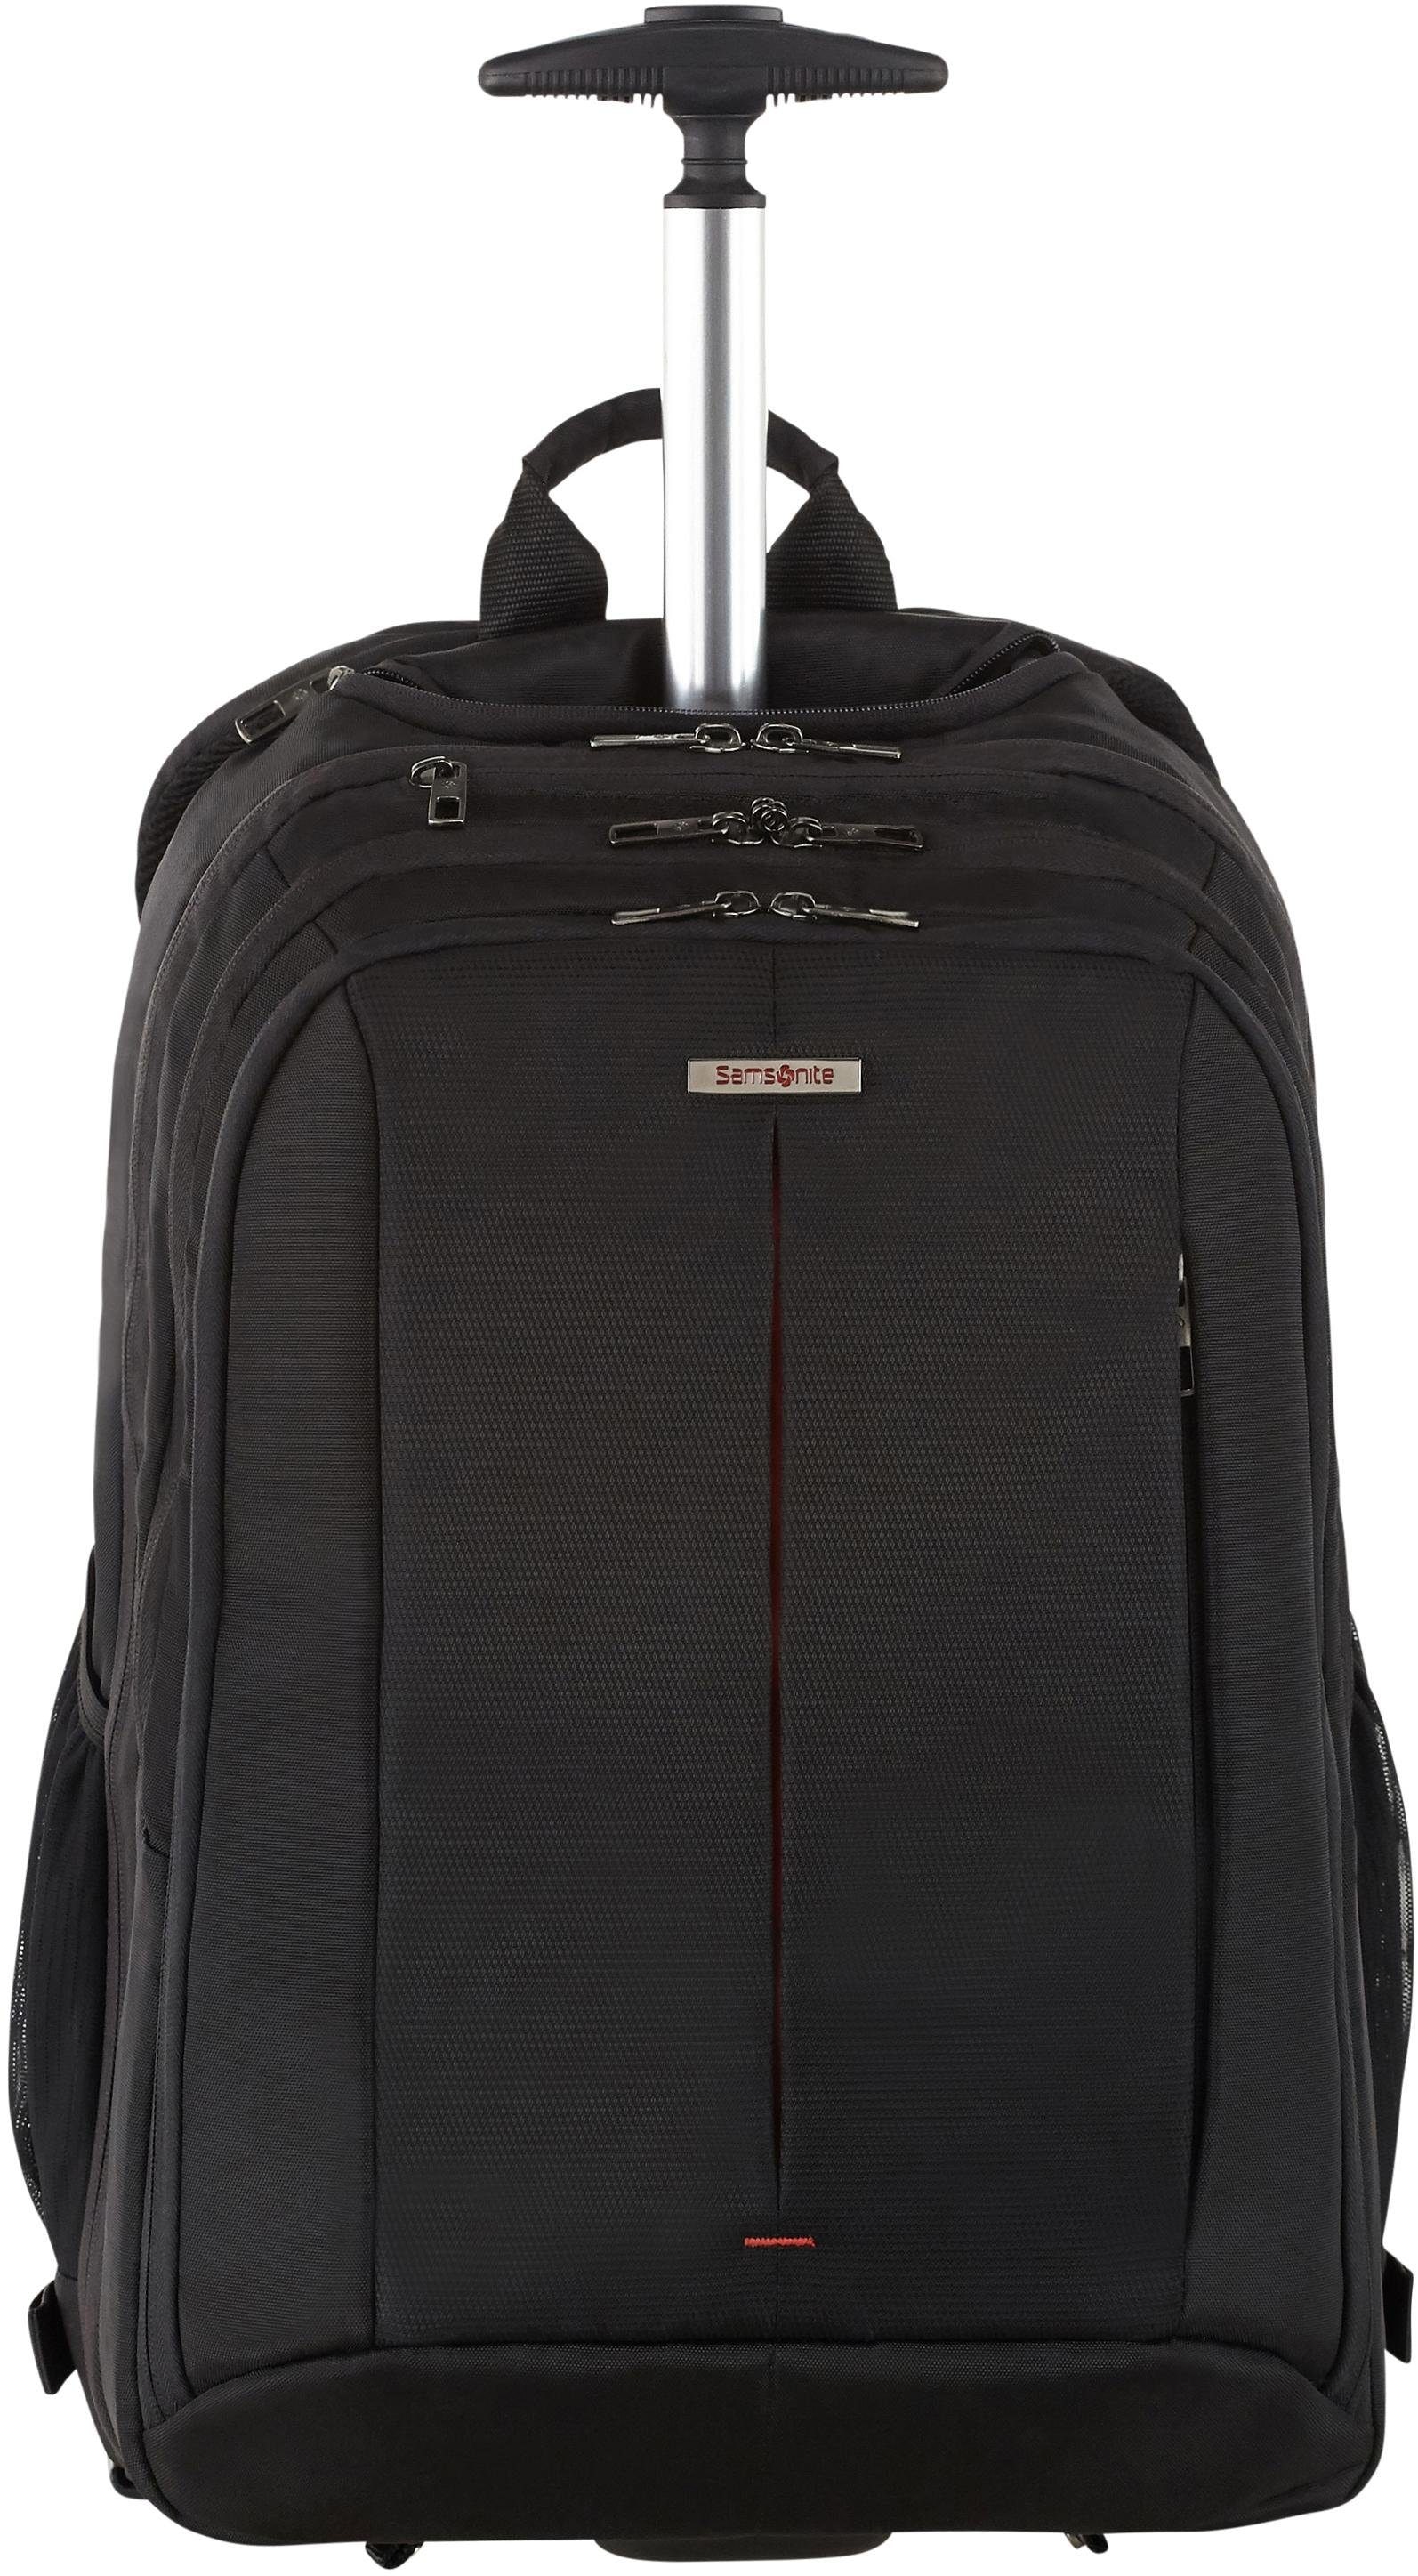 Samsonite Laptoprucksack "Guardit 2.0, black, mit 2 Rollen und Trolleyfunktion", Reisekoffer Trolley Aufgabegepäck TSA-Z